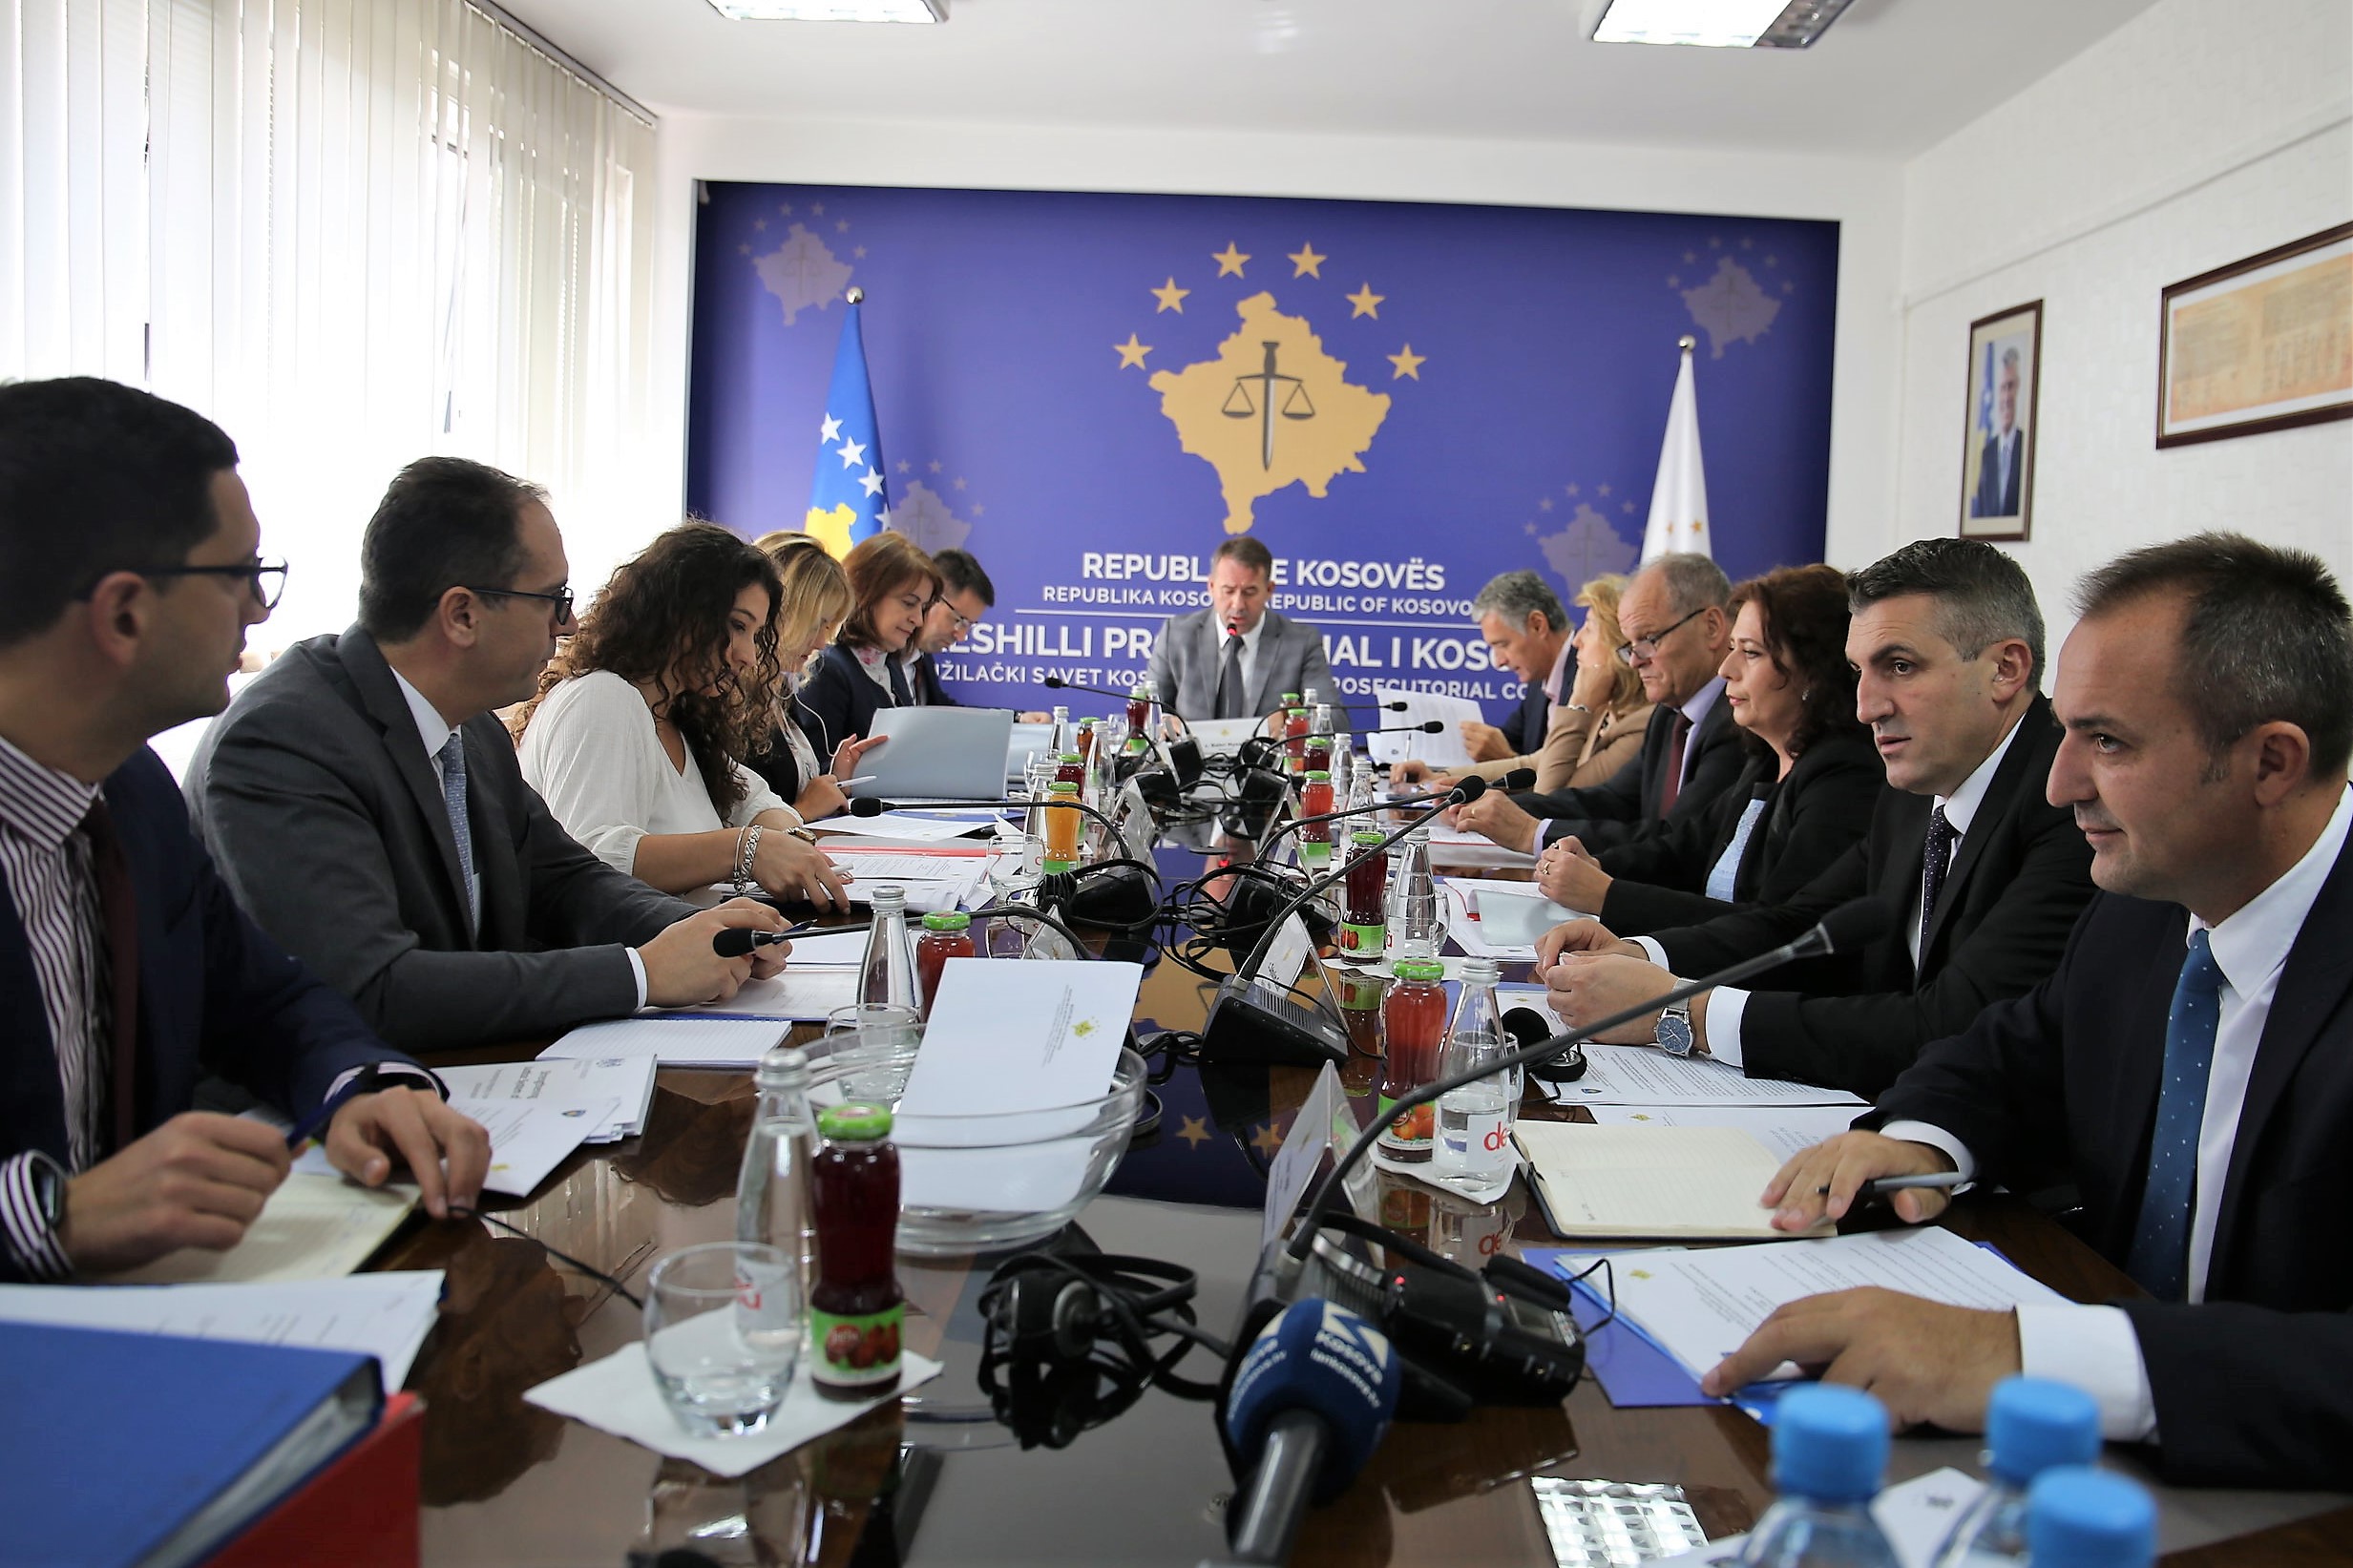 Reaction from Kosovo Prosecutorial Council